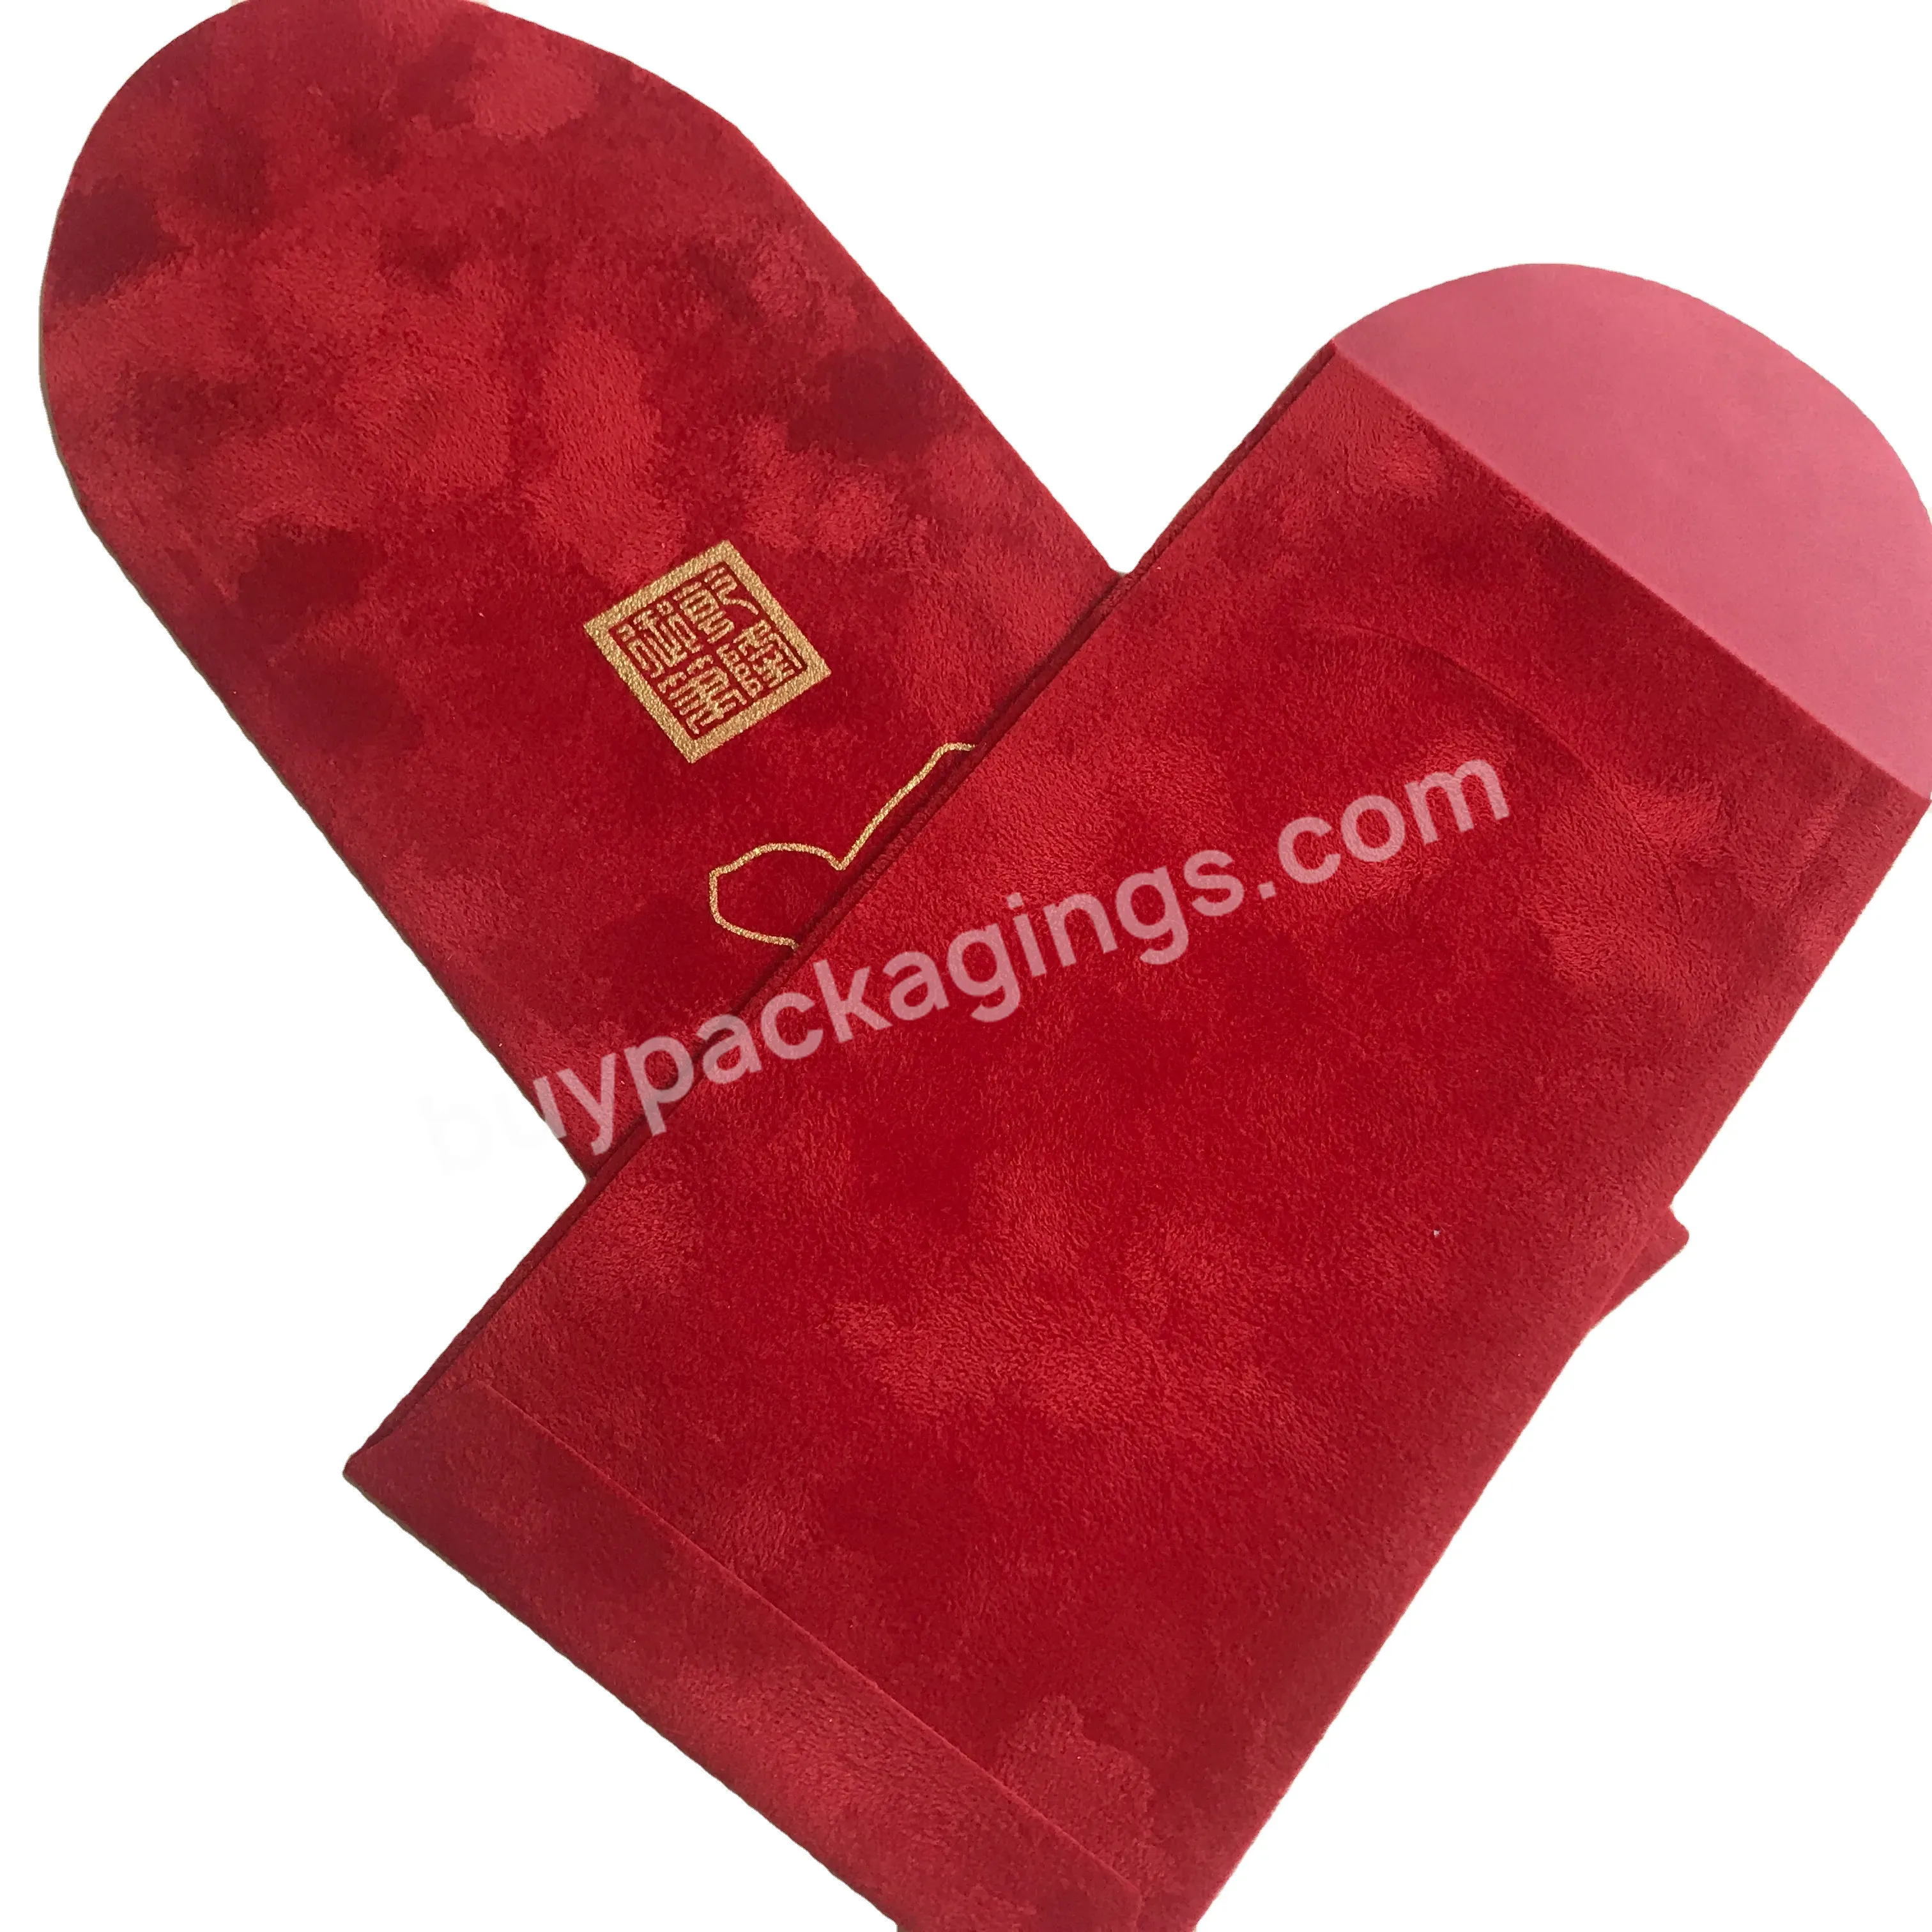 Frosted Matte Red Packet Promotional Custom Cheap Cardboard Wedding Gift Cash Envelopes Velvet Red Envelope - Buy Red Packet Envelope,Frosted Envelope,Velvet Red Packet /velvet Red Envelope.